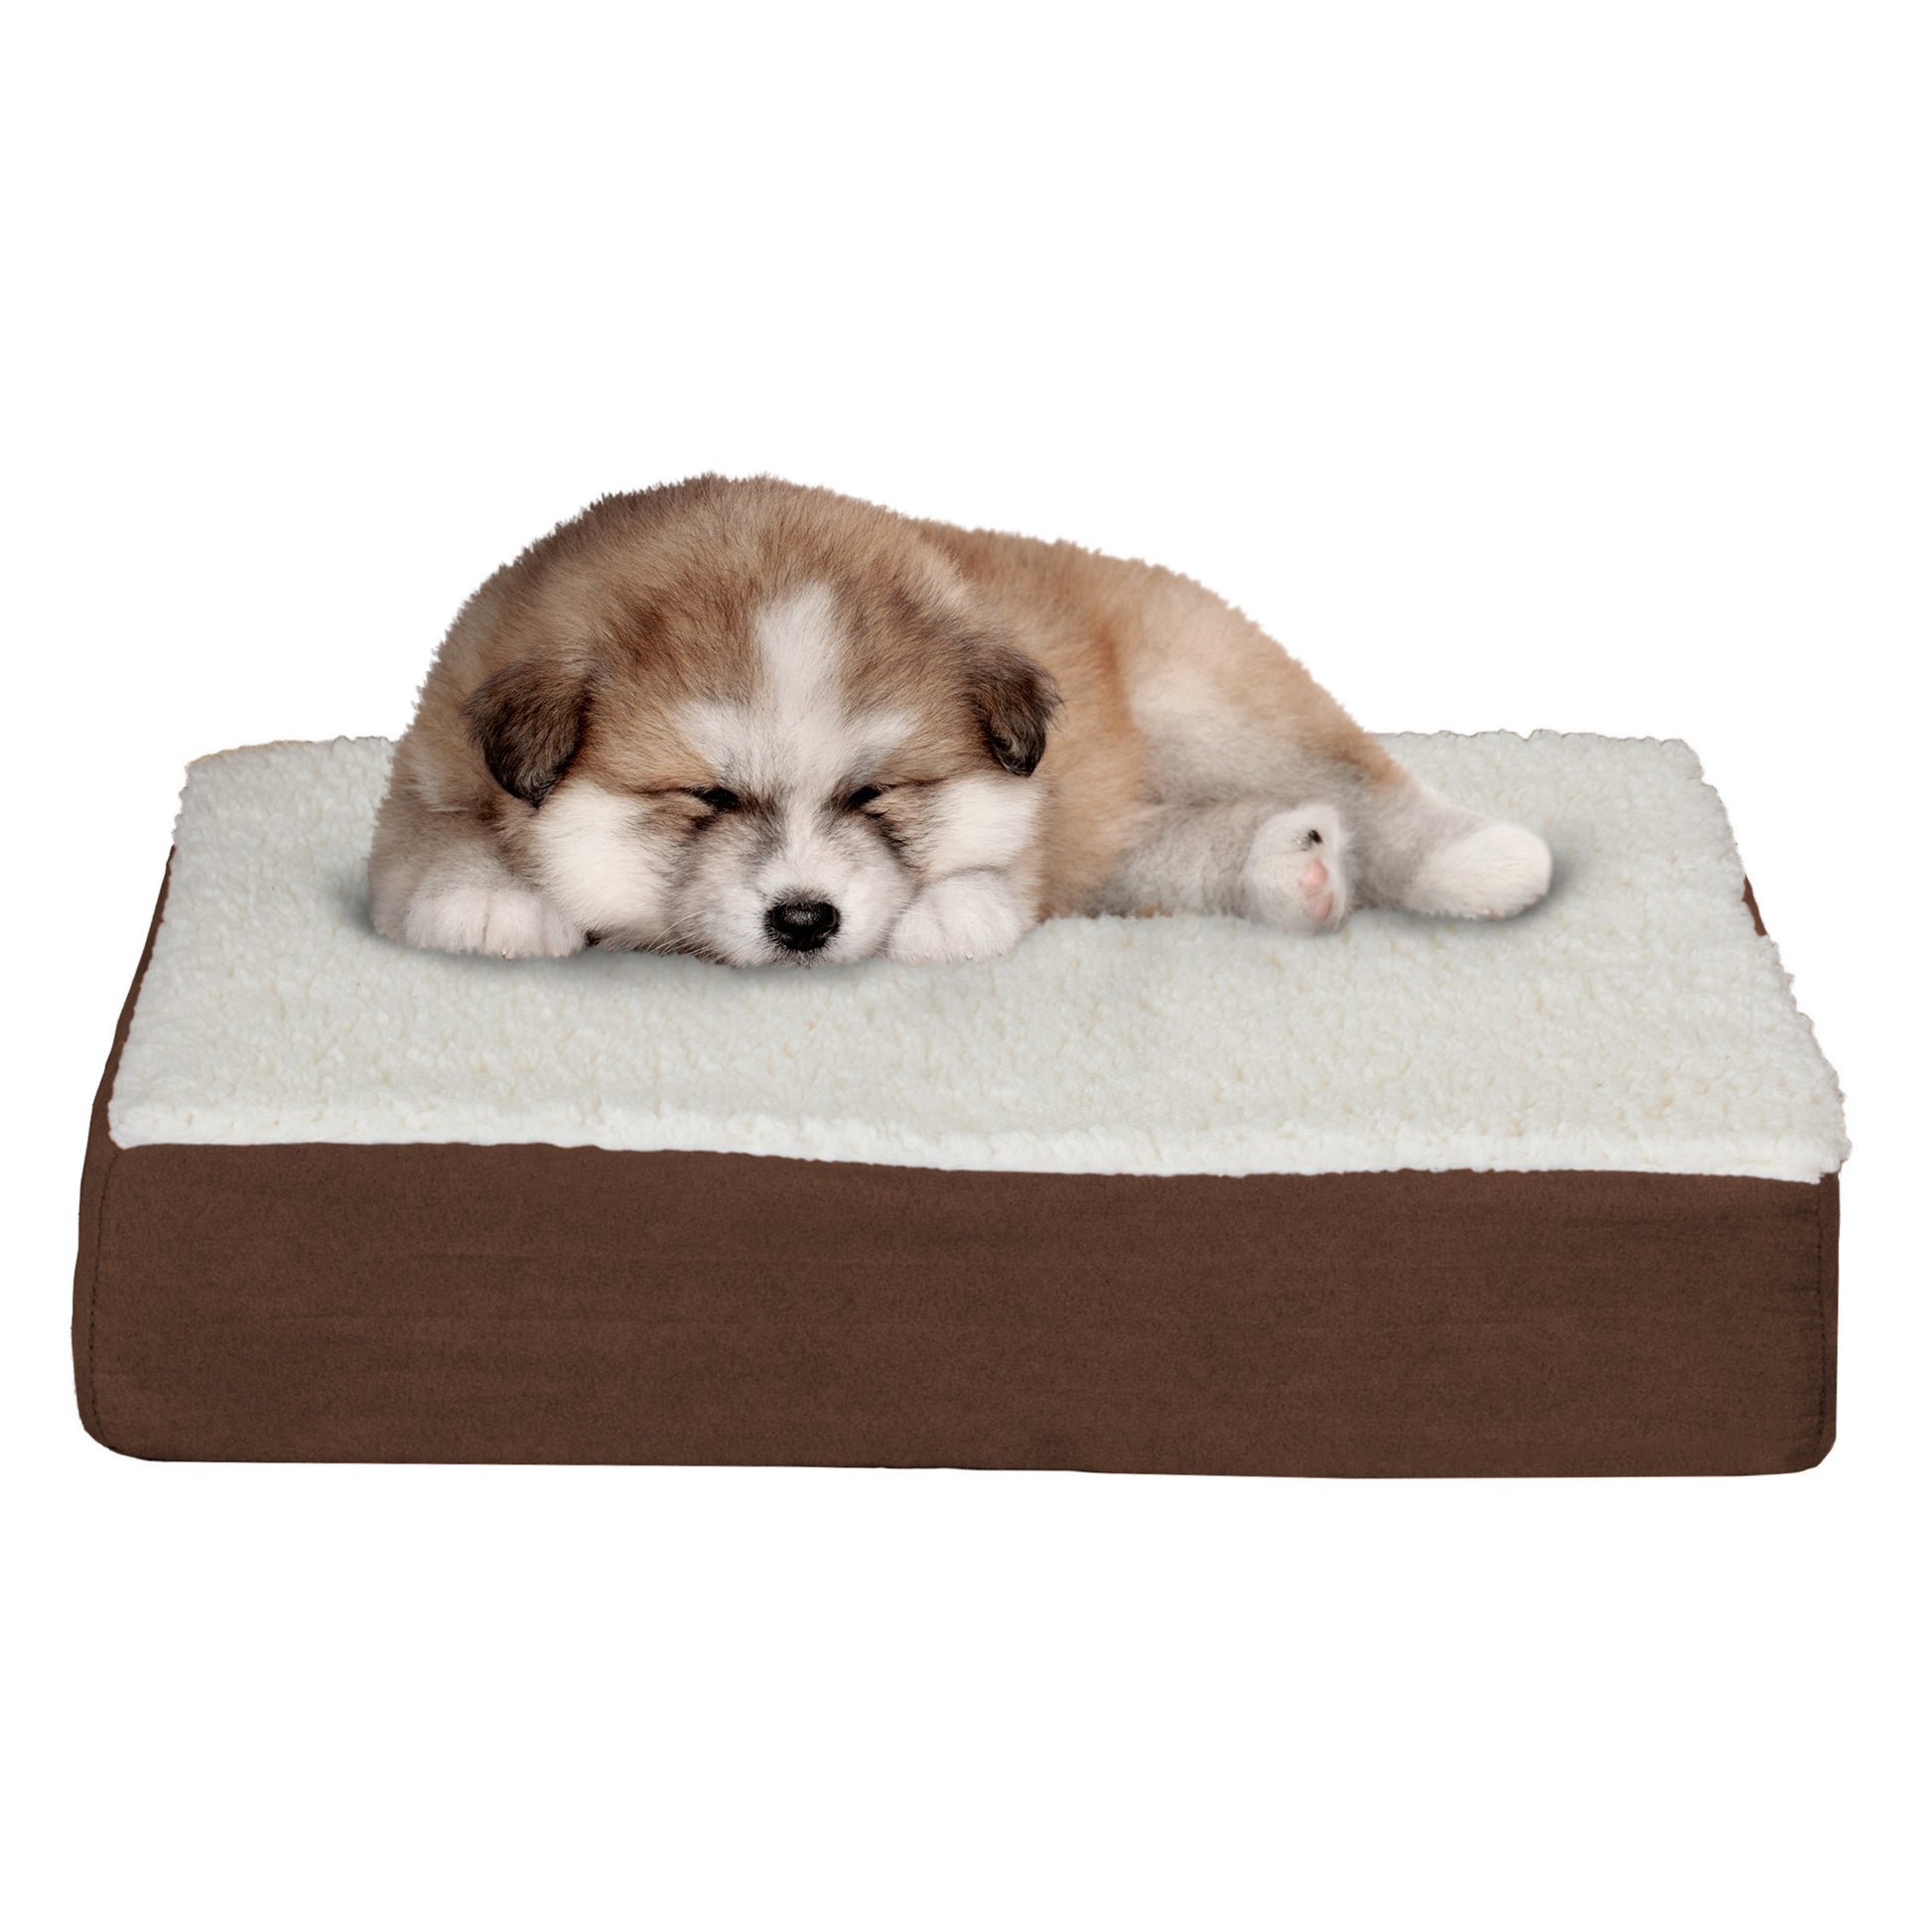 Petmaker Orthopedic Sherpa Top Pet Bed, Brown, Small